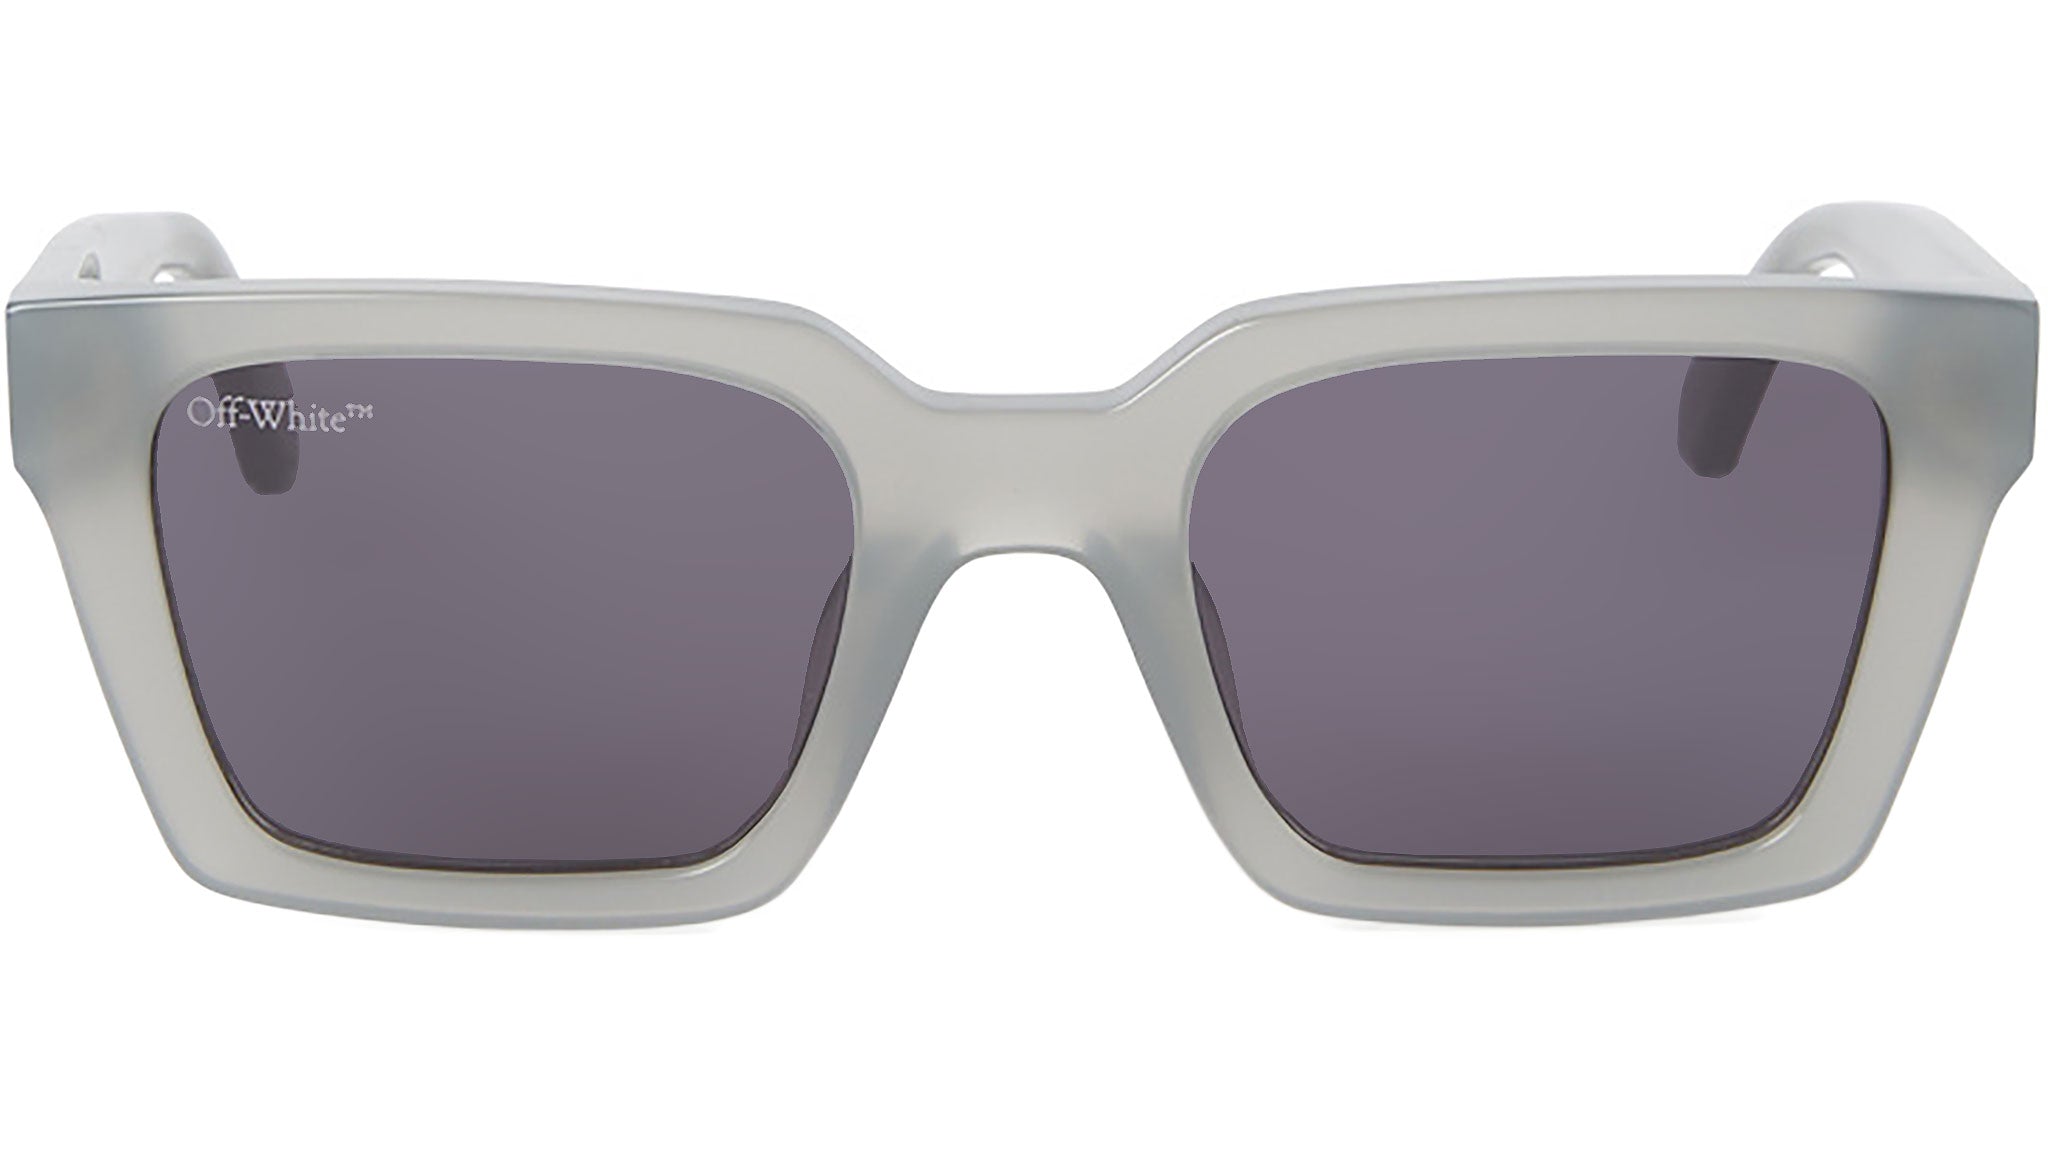 Palermo - Sunglasses - Off-White